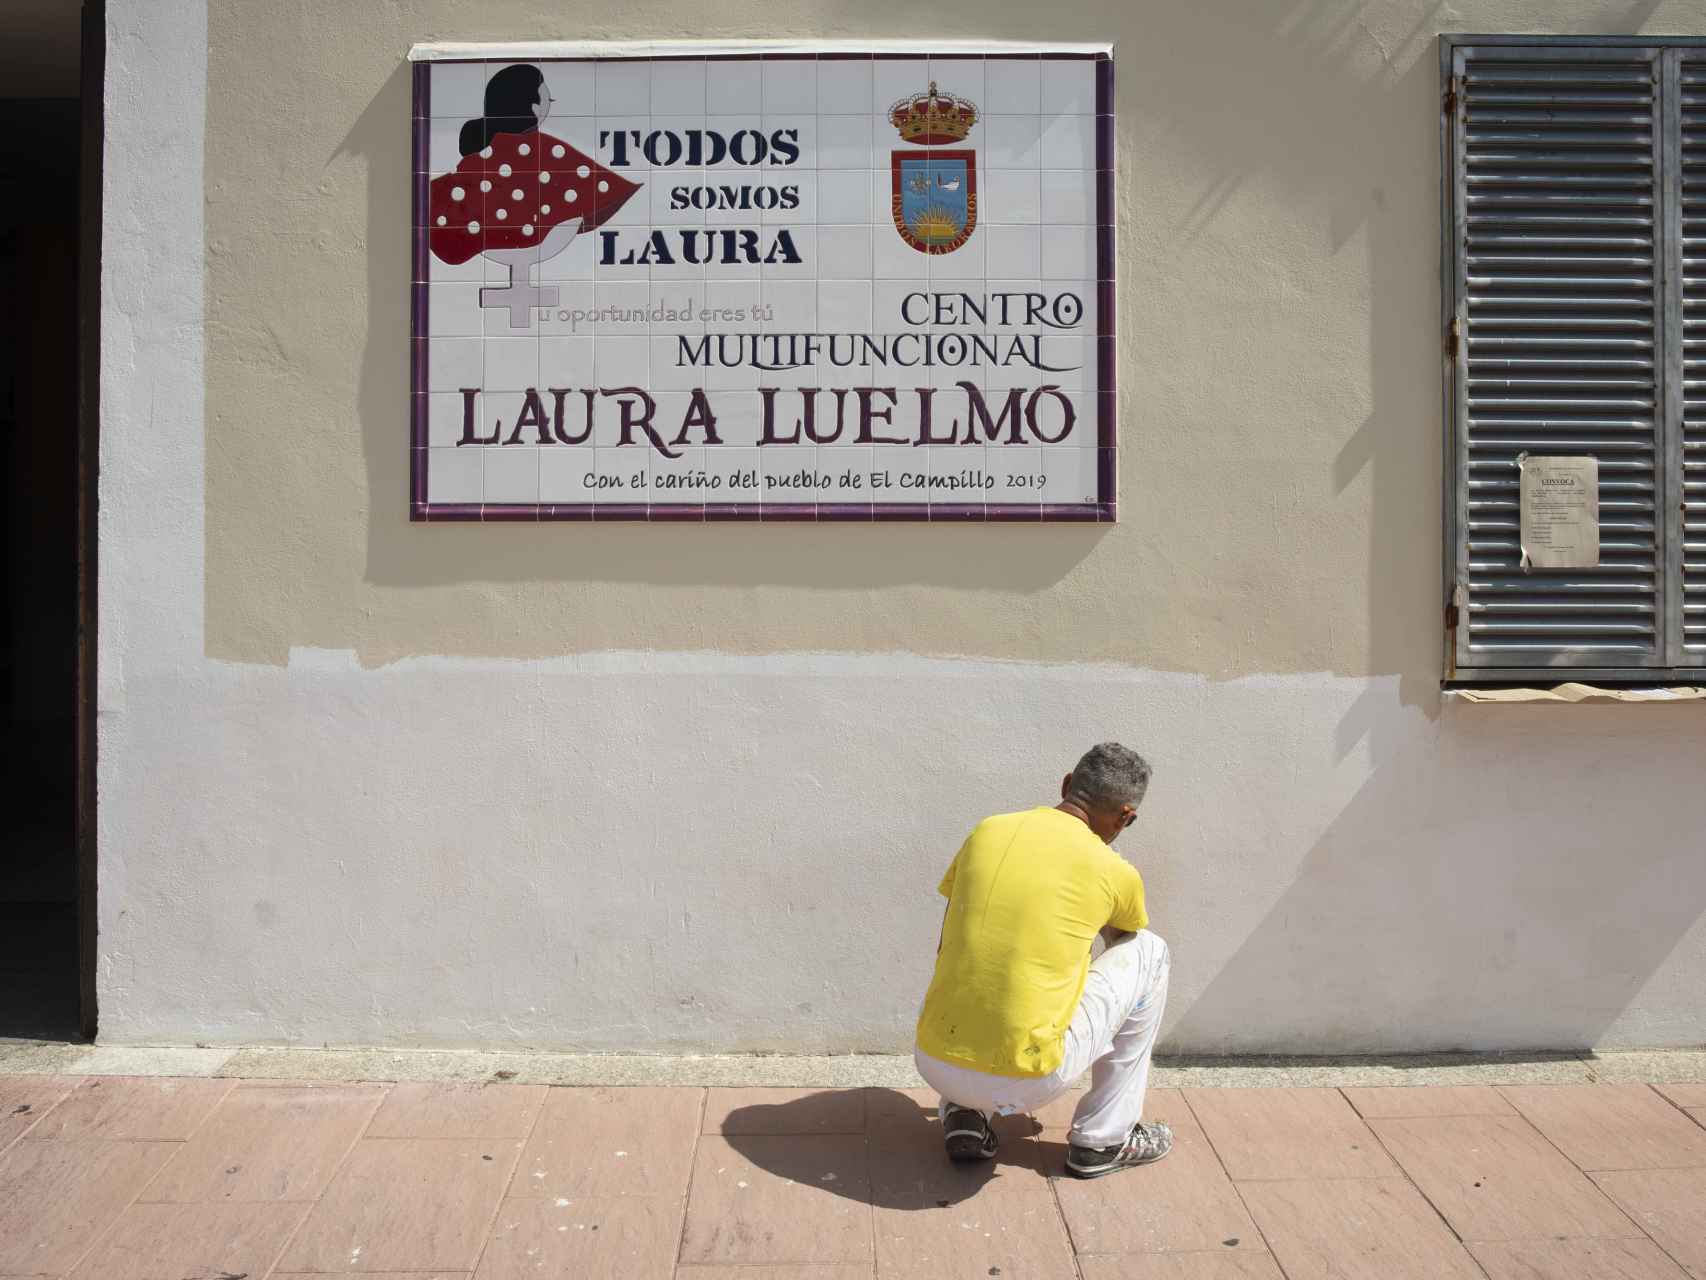 El centro multifuncional que lleva el nombre de Laura Luelmo.